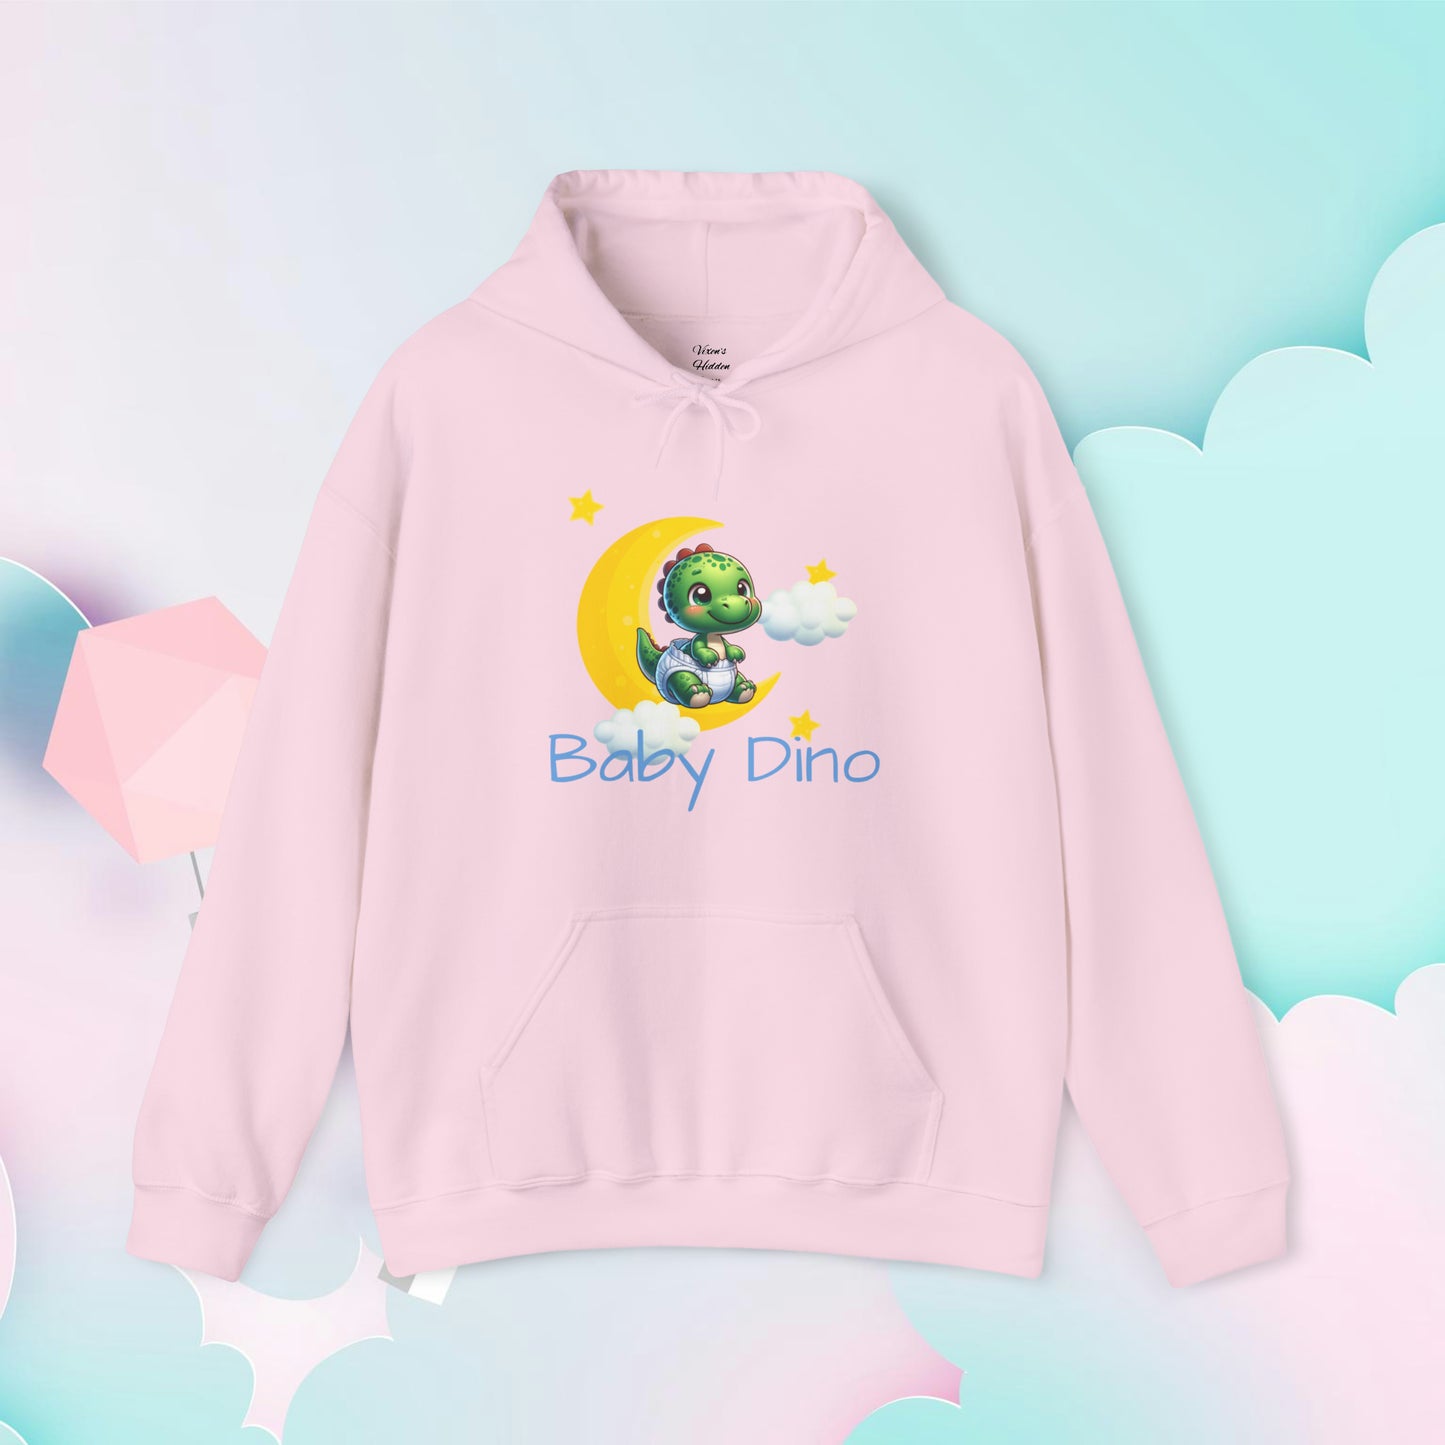 Baby Dino Hoodie - Unisex Hooded Sweatshirt